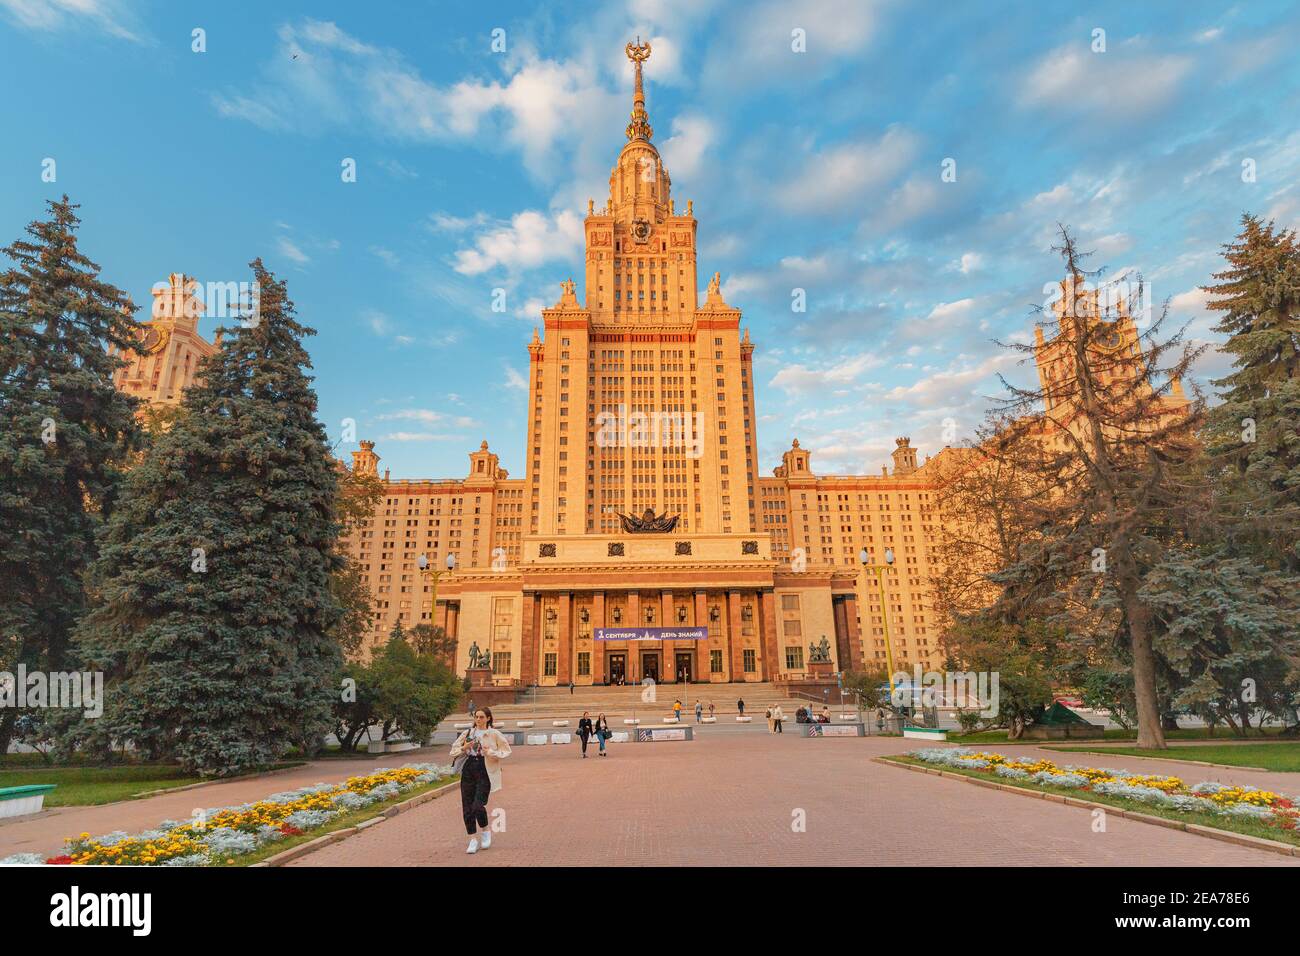 02 de septiembre de 2020, Moscú, Rusia: El campus principal de la Universidad Estatal de Lomonosov Moscú. Edificio majestuoso en el estilo arquitectónico del estalinista Foto de stock